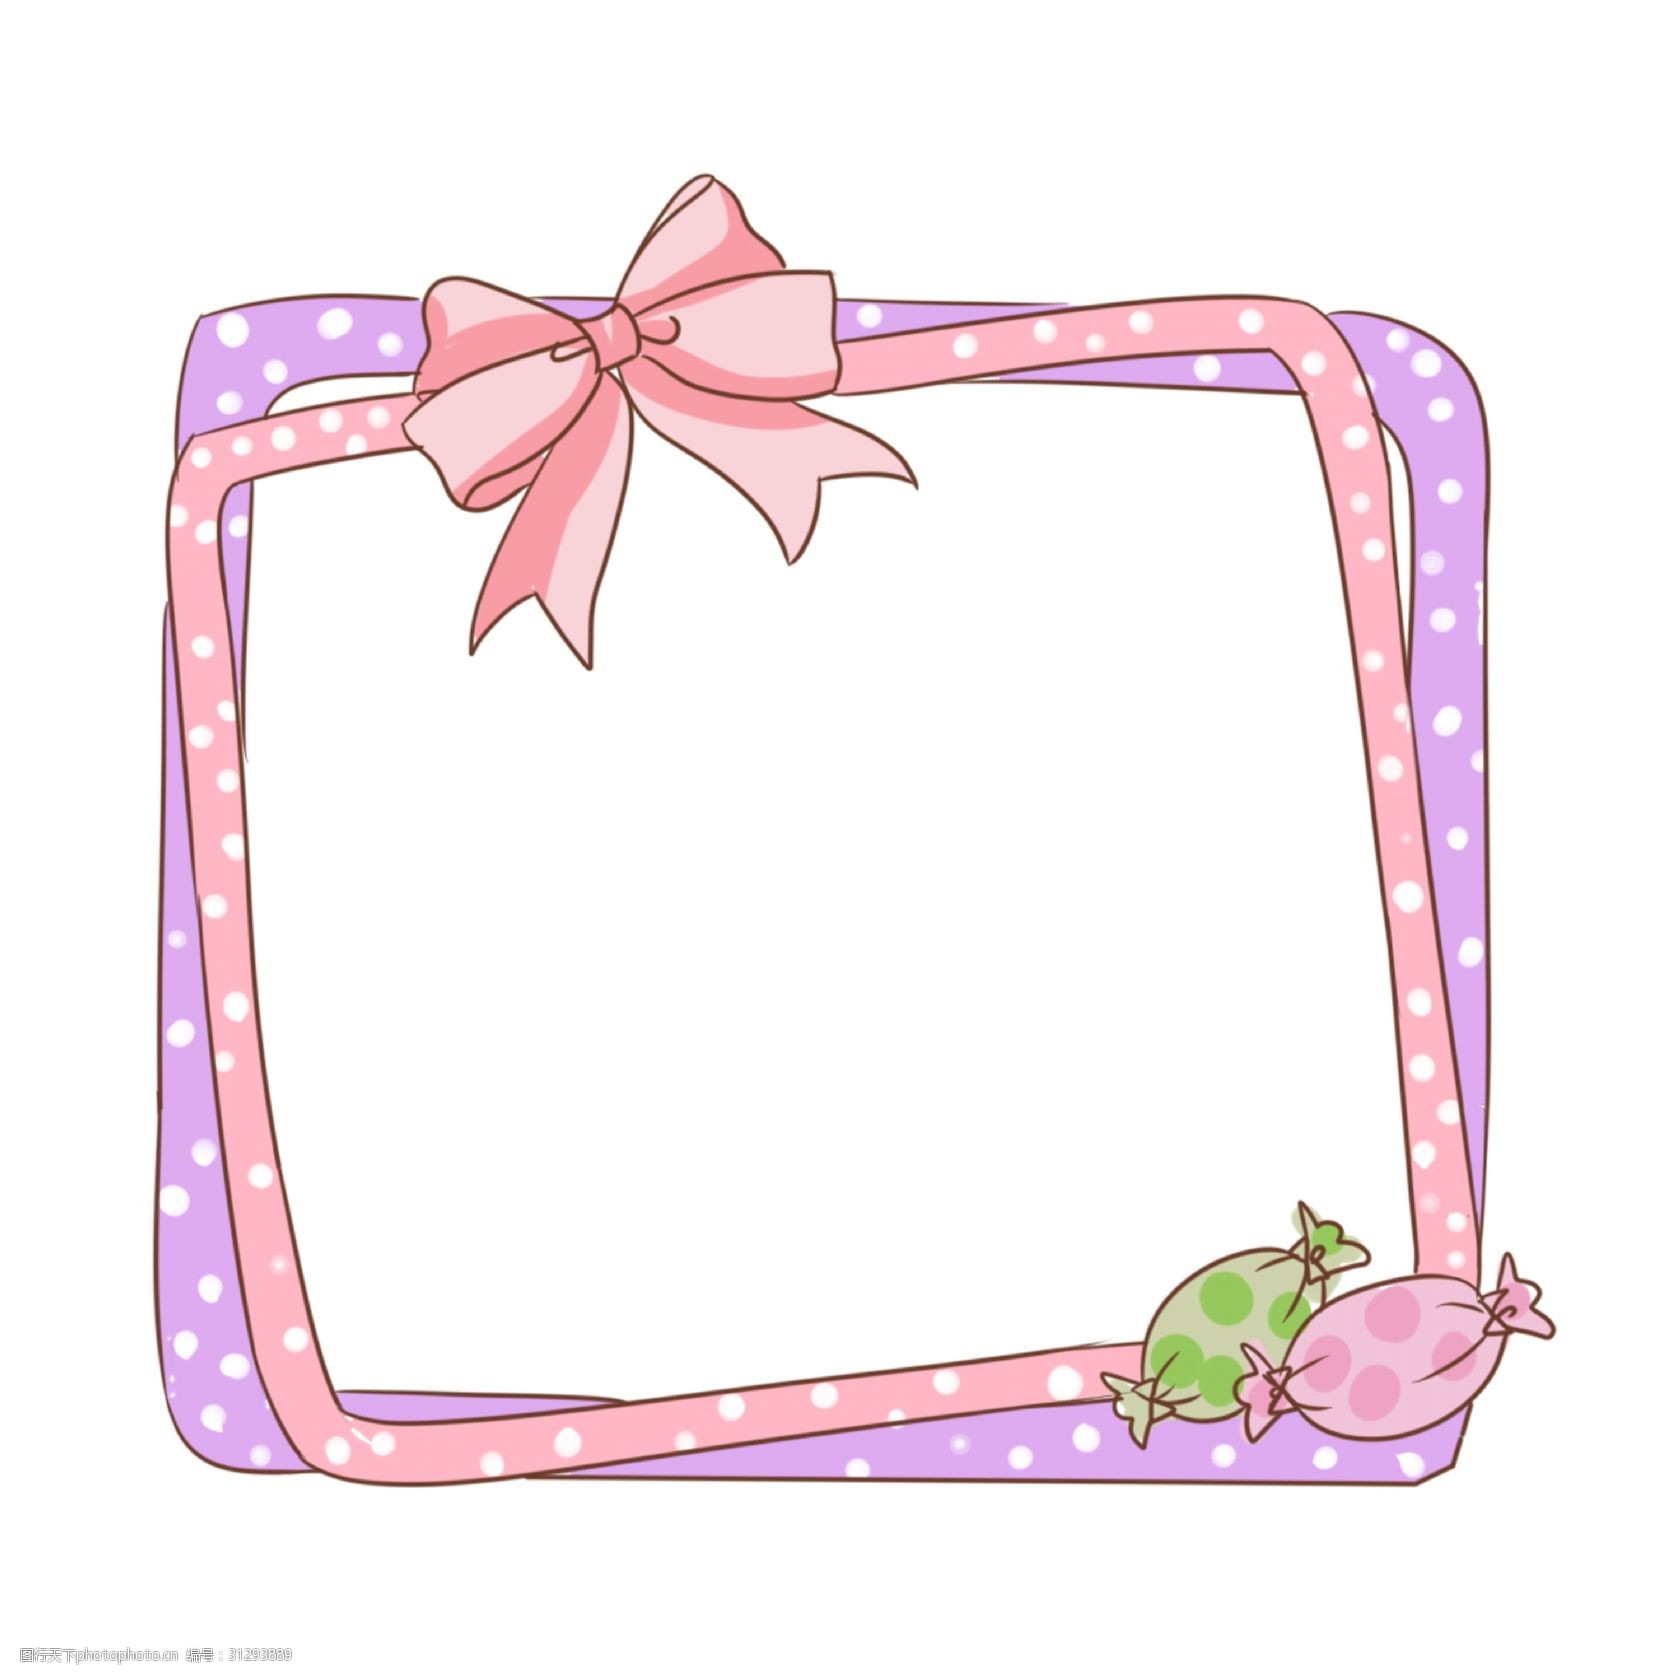 粉色的边框 手绘蝴蝶结边框 糖果边框 边框装饰 漂亮的蝴蝶结边框